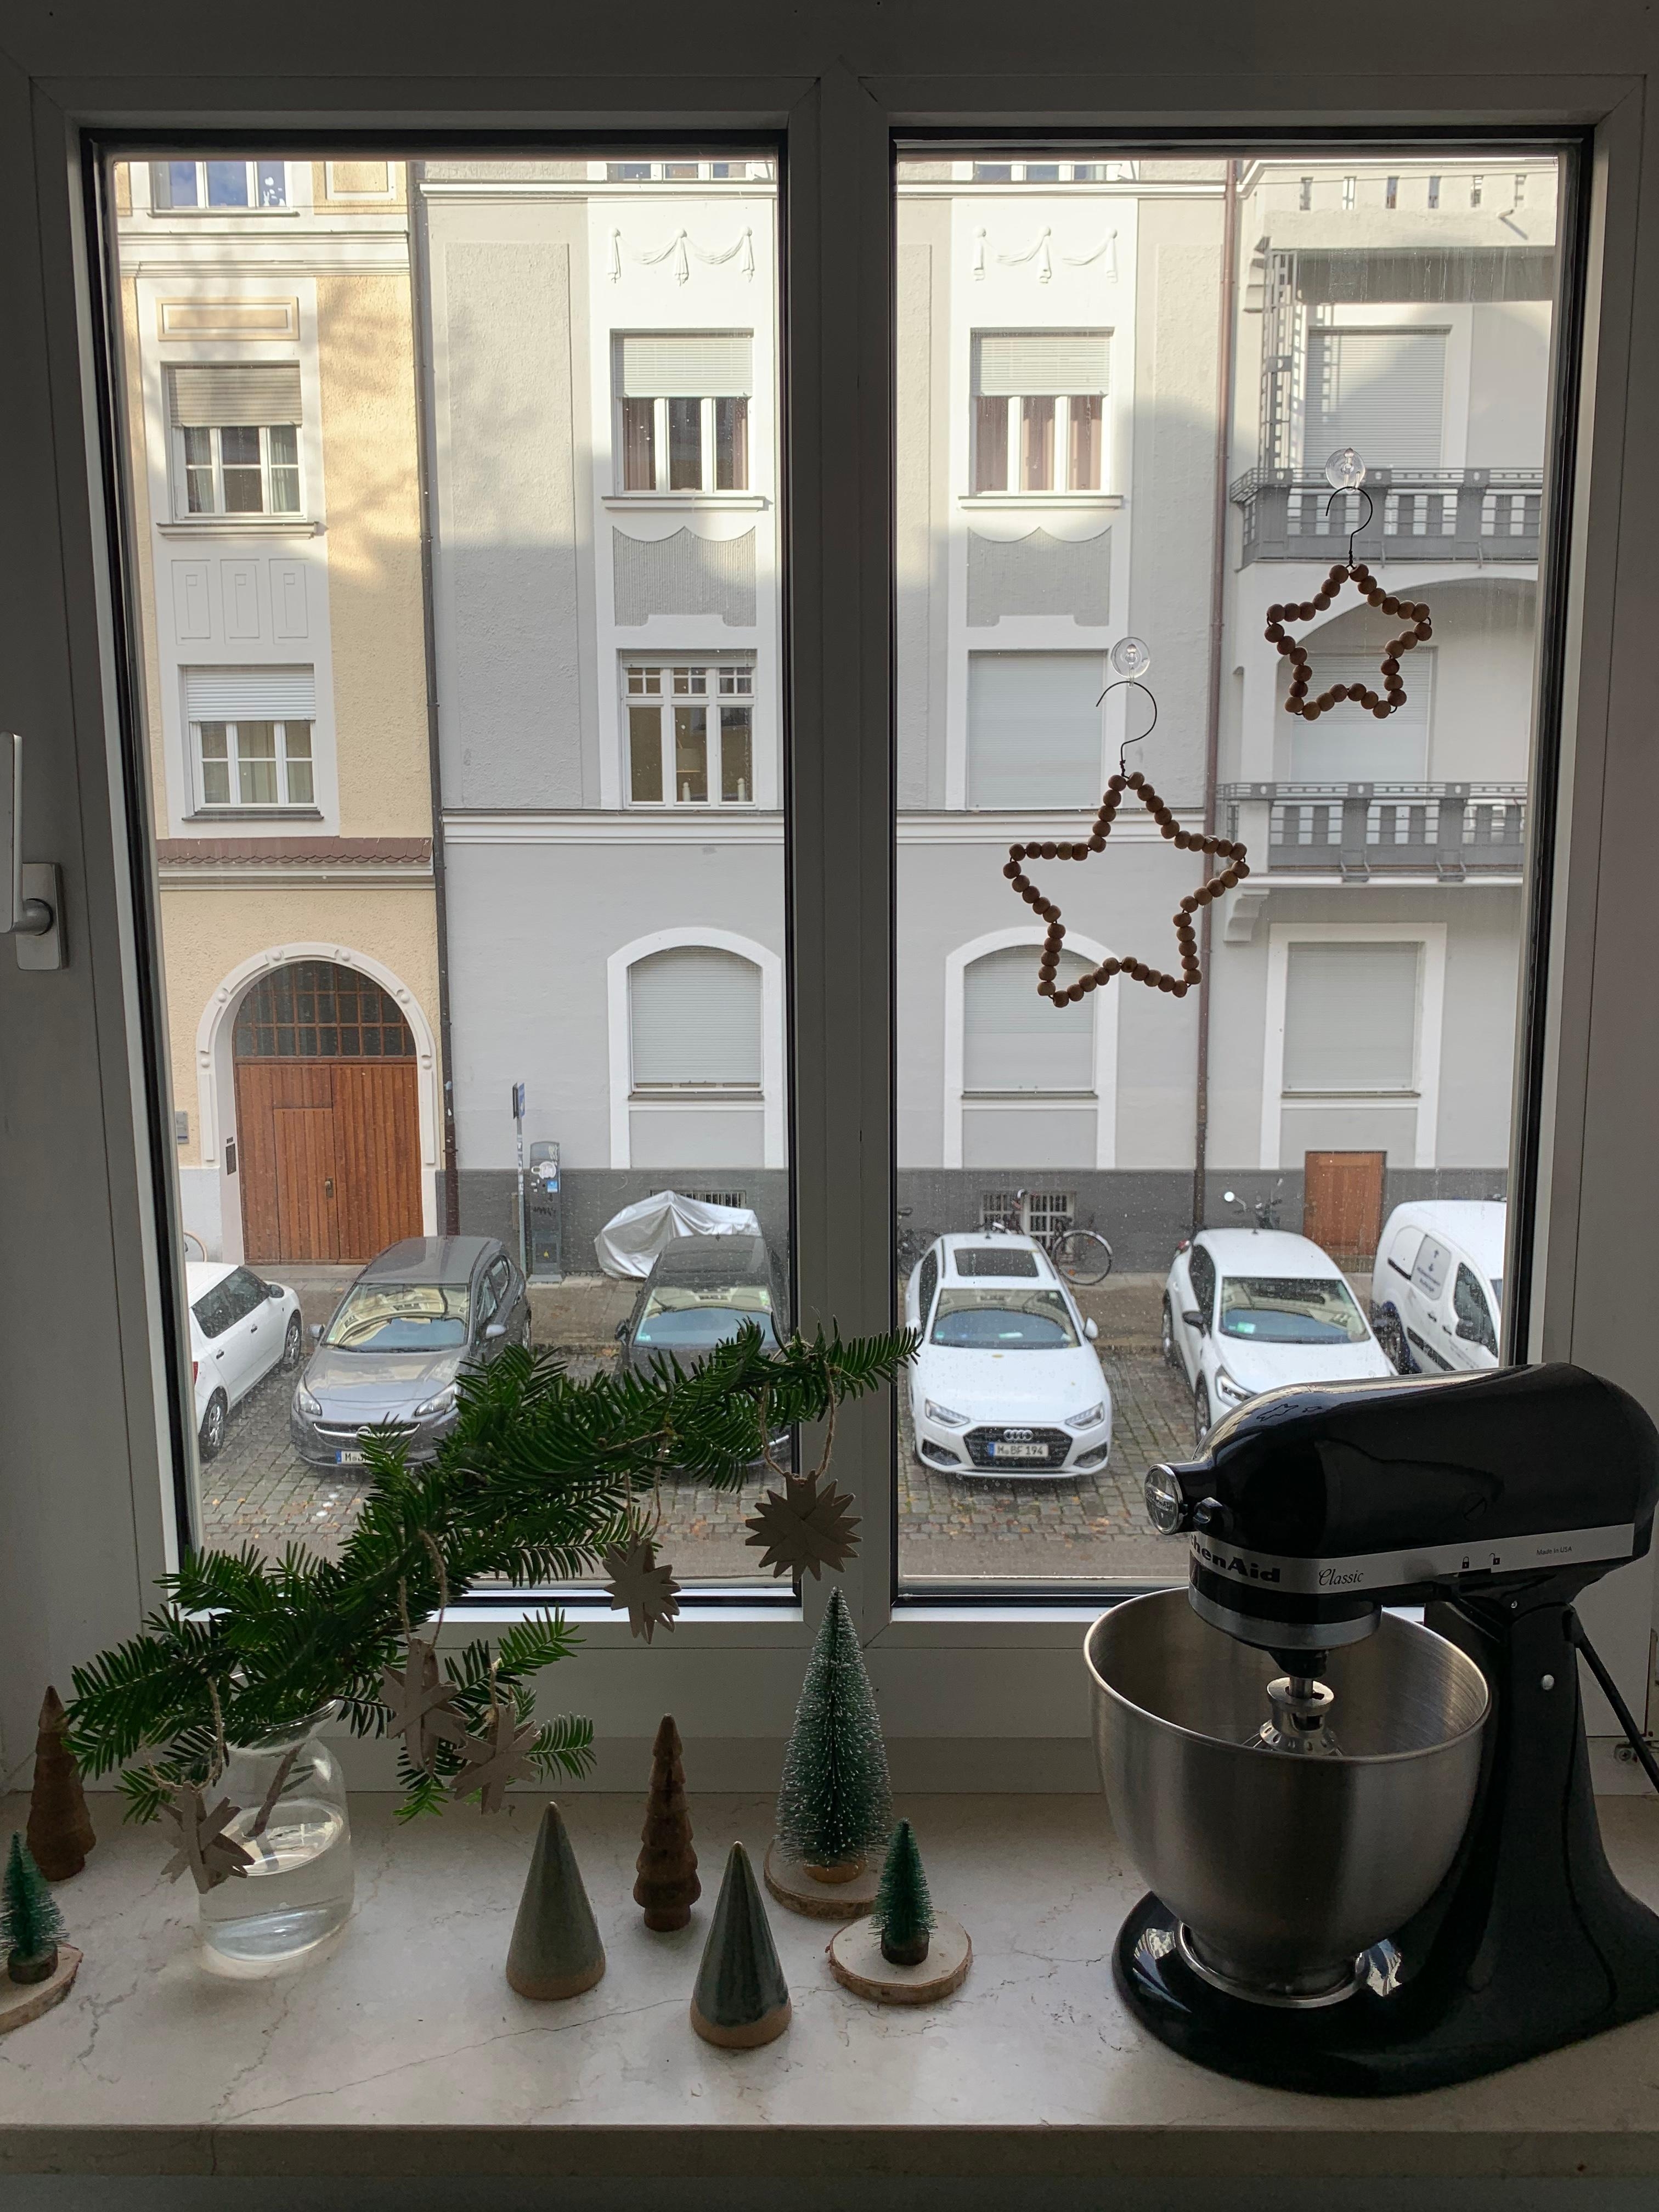 Fensterdeko 🌲
#fensterbrett #fenster #advent #weihnachtsdeko #küchendeko #tannengrün #zweig #tannen